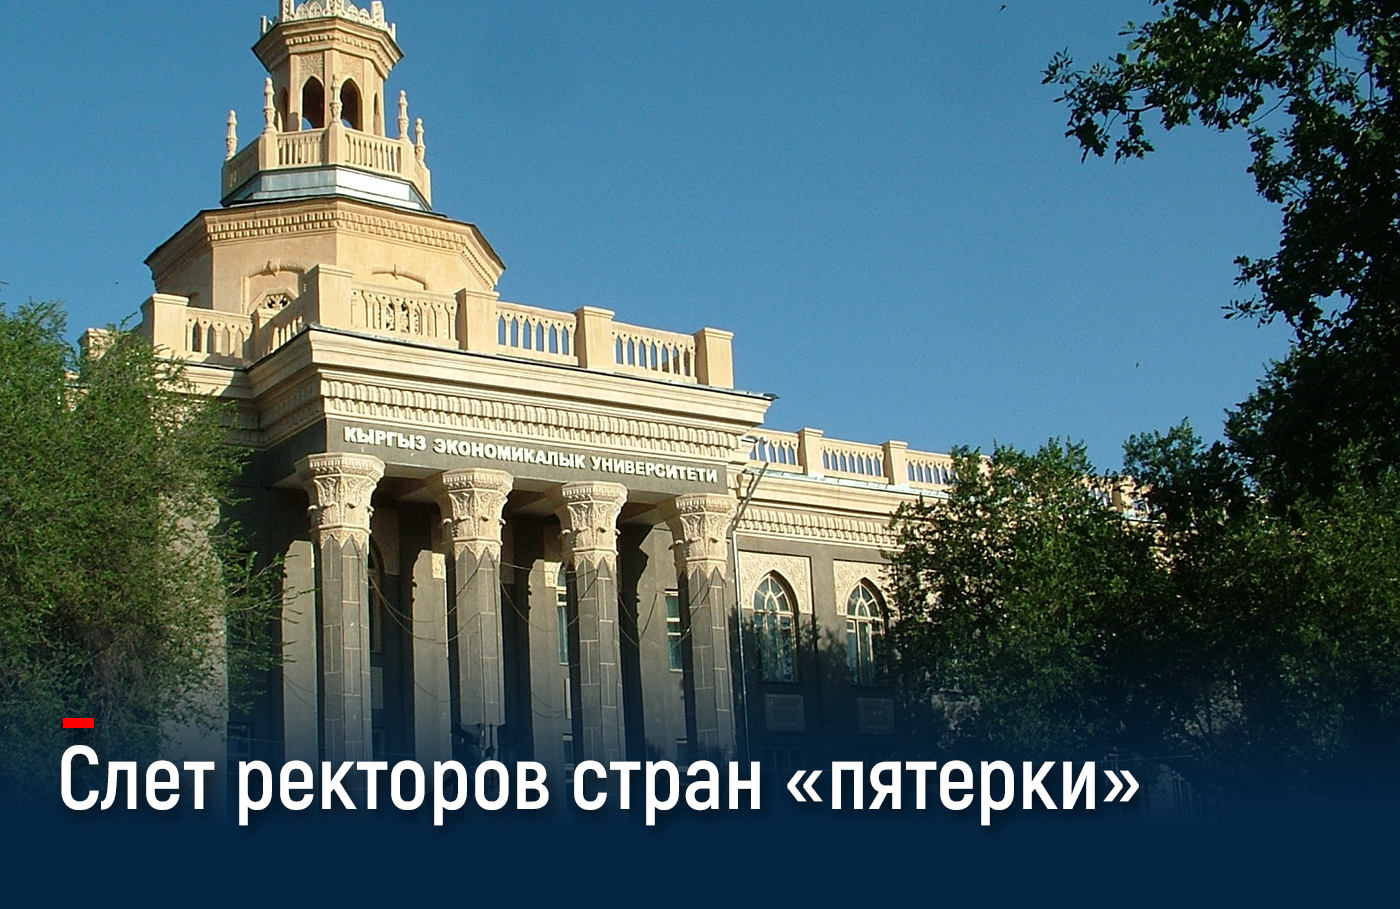 Ректоры вузов стран ЕАЭС обсудят в Бишкеке создание Евразийского сетевого университета